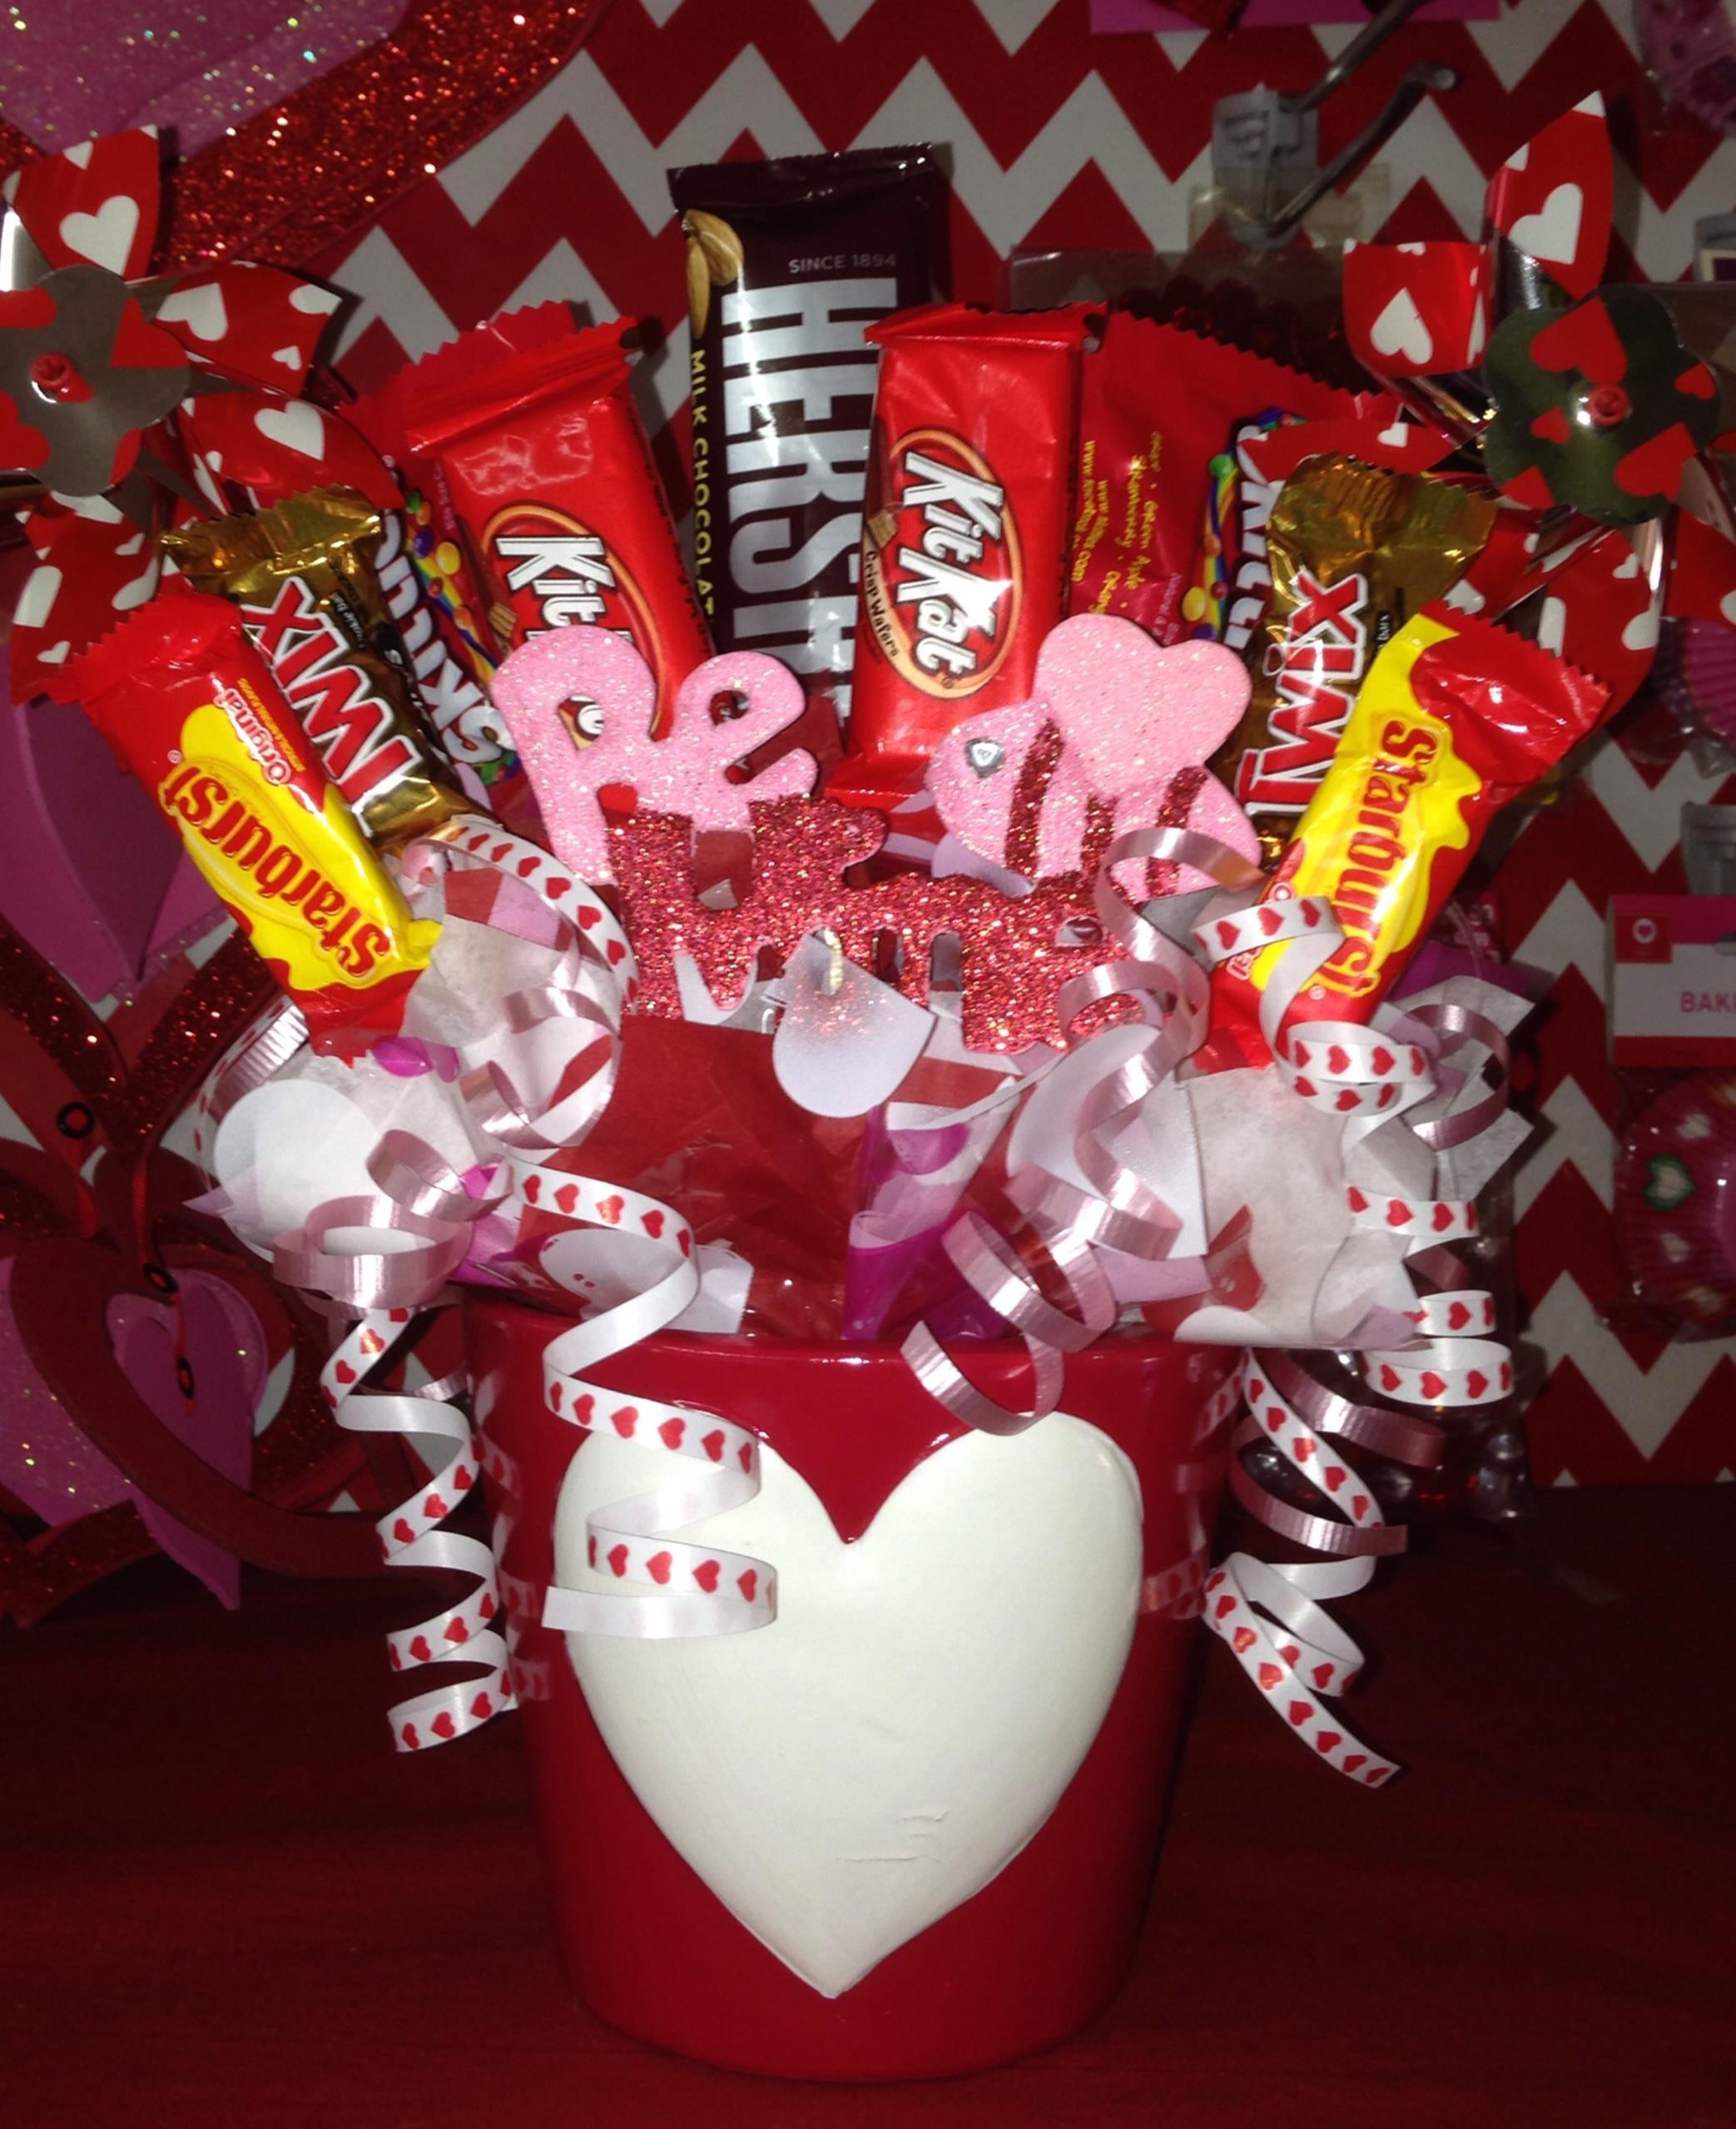 Unconventional Valentines Gift Ideas
 Valentine Candy Bouquet Ideas 16 ViralDecoration